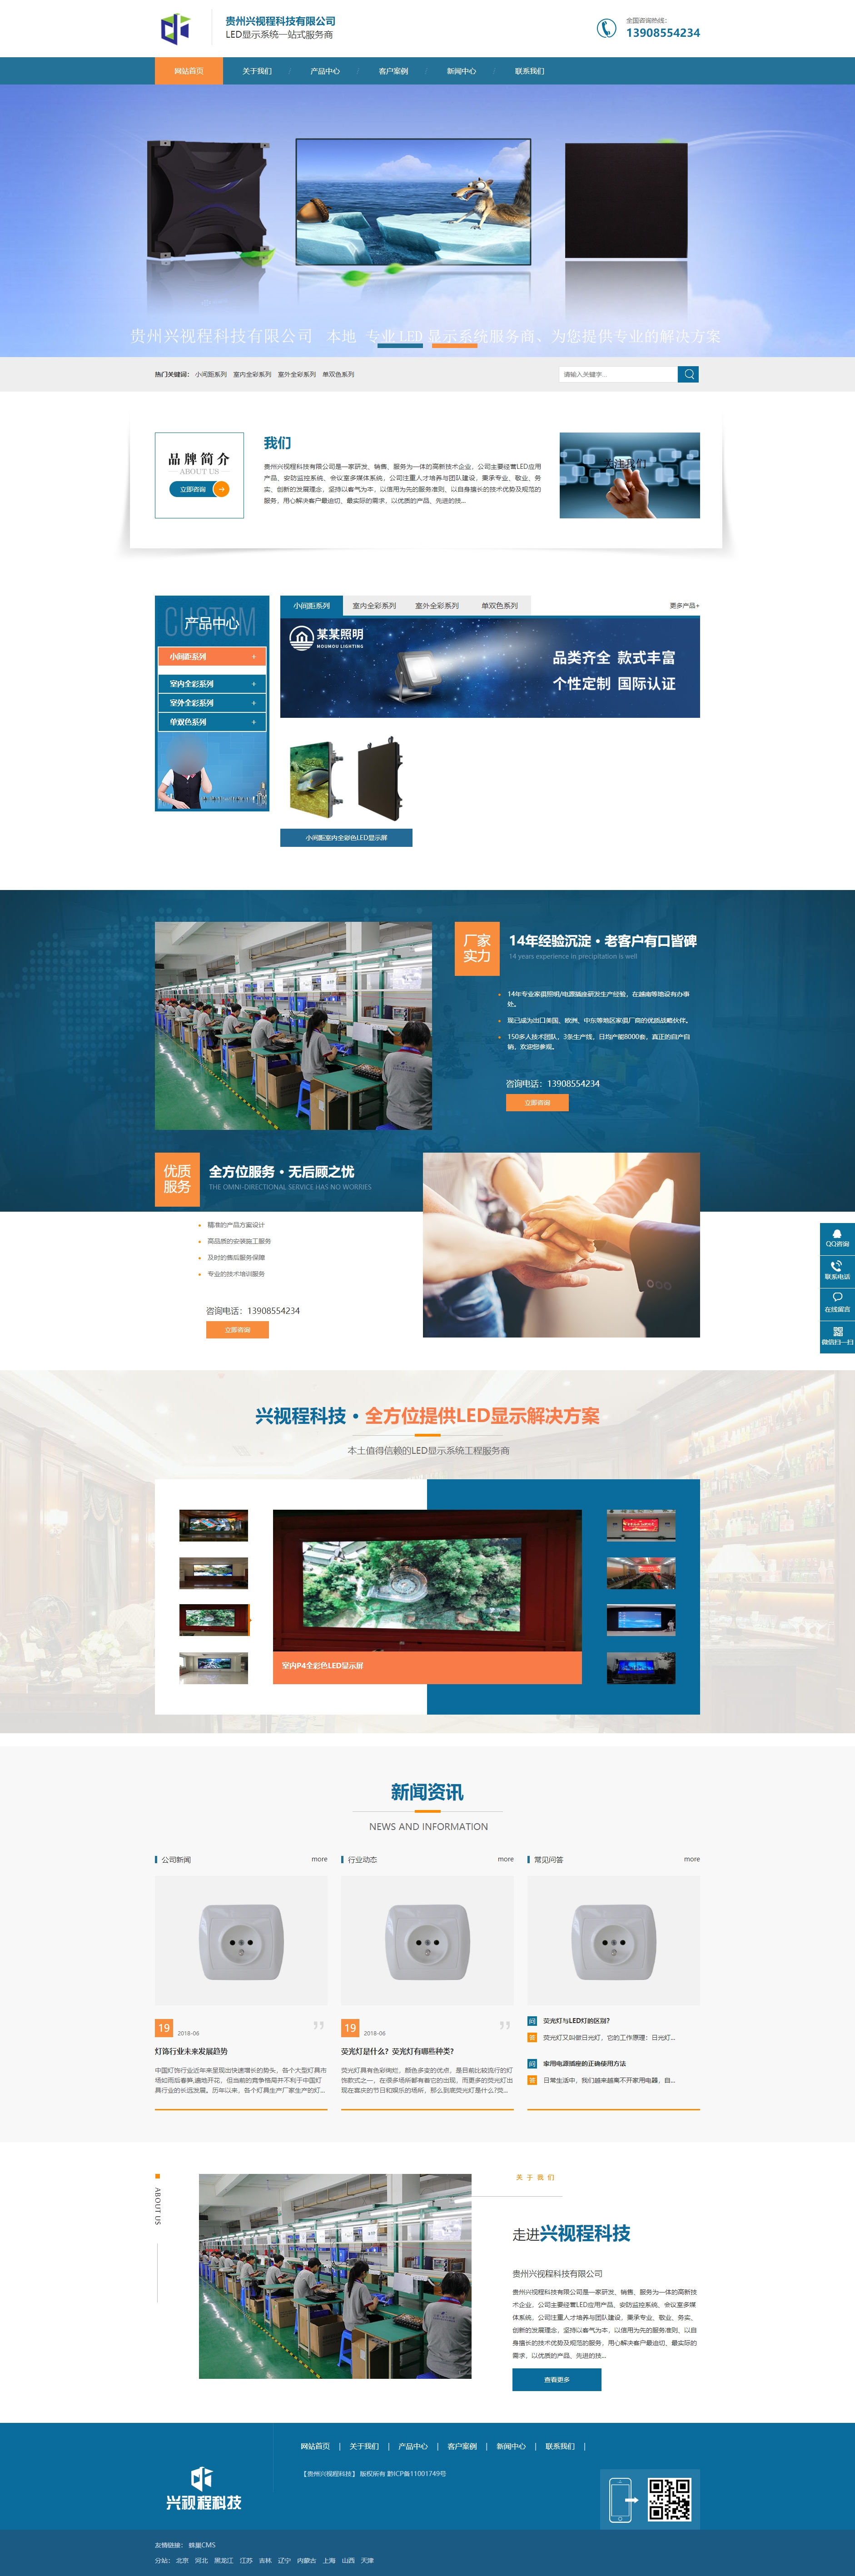 长顺贵州兴视程科技有限公司 网站正式上线